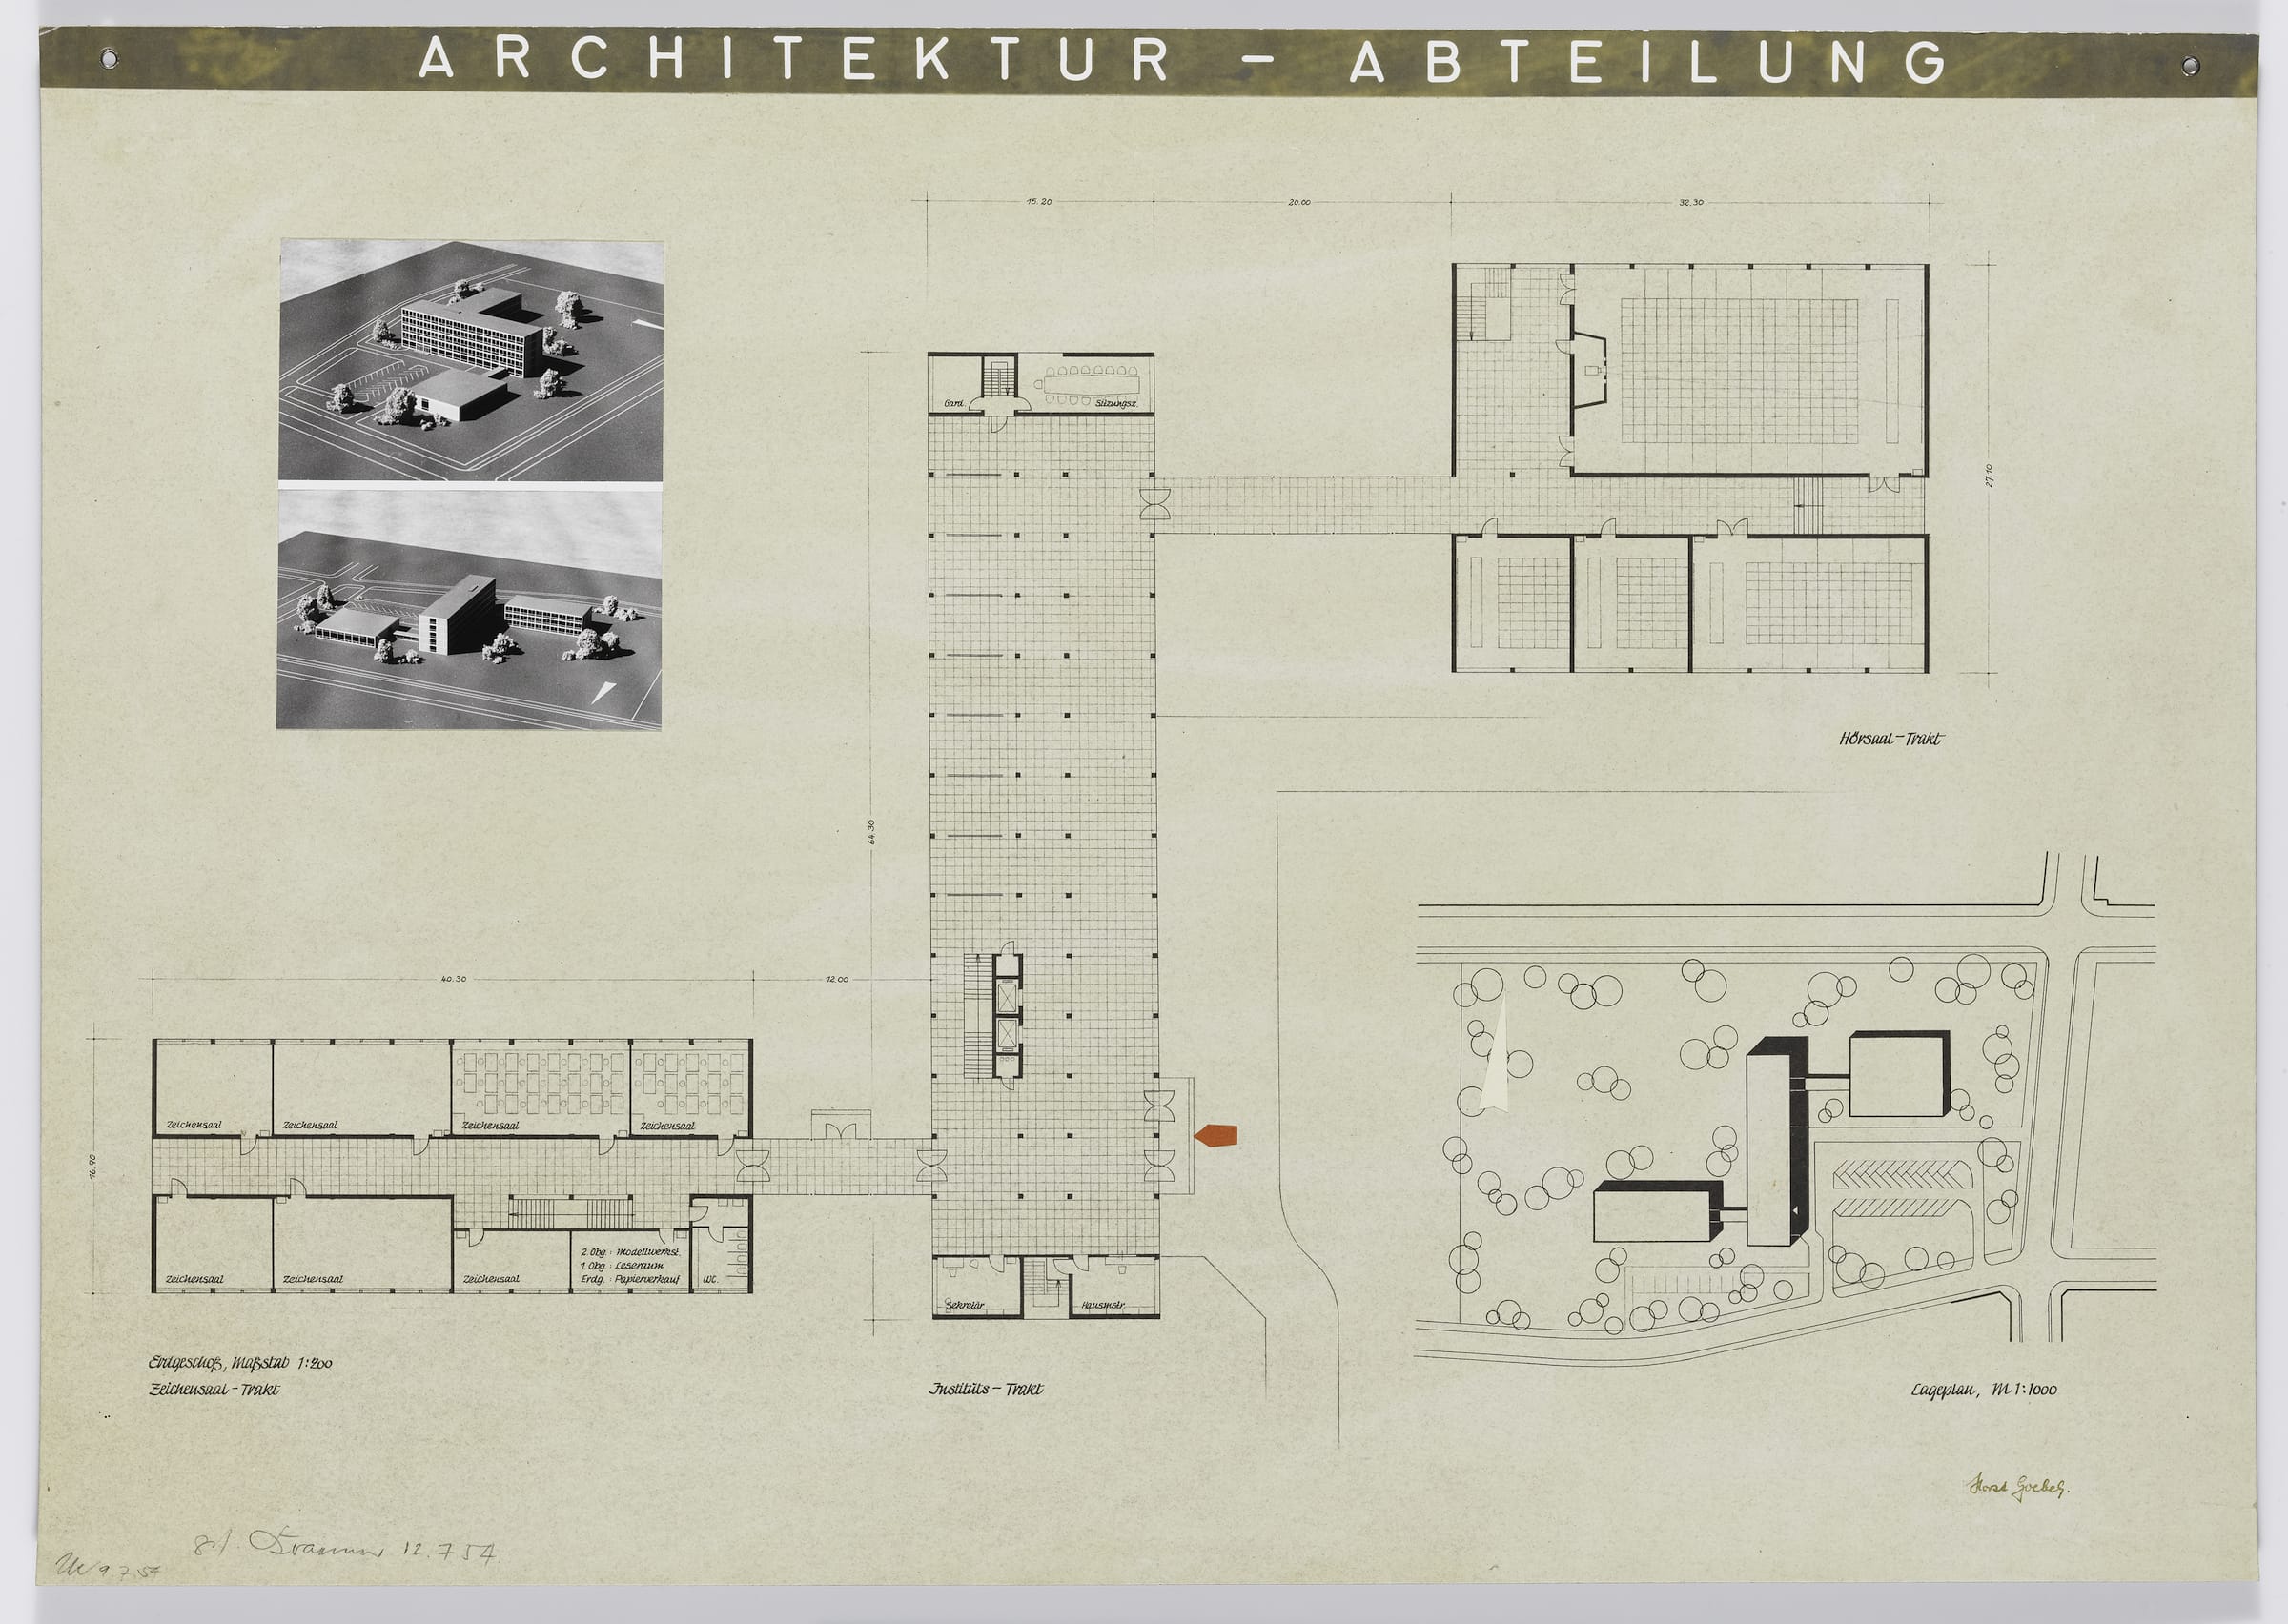 SAIB G103 Goebel Architektur Abteilung 1954 small